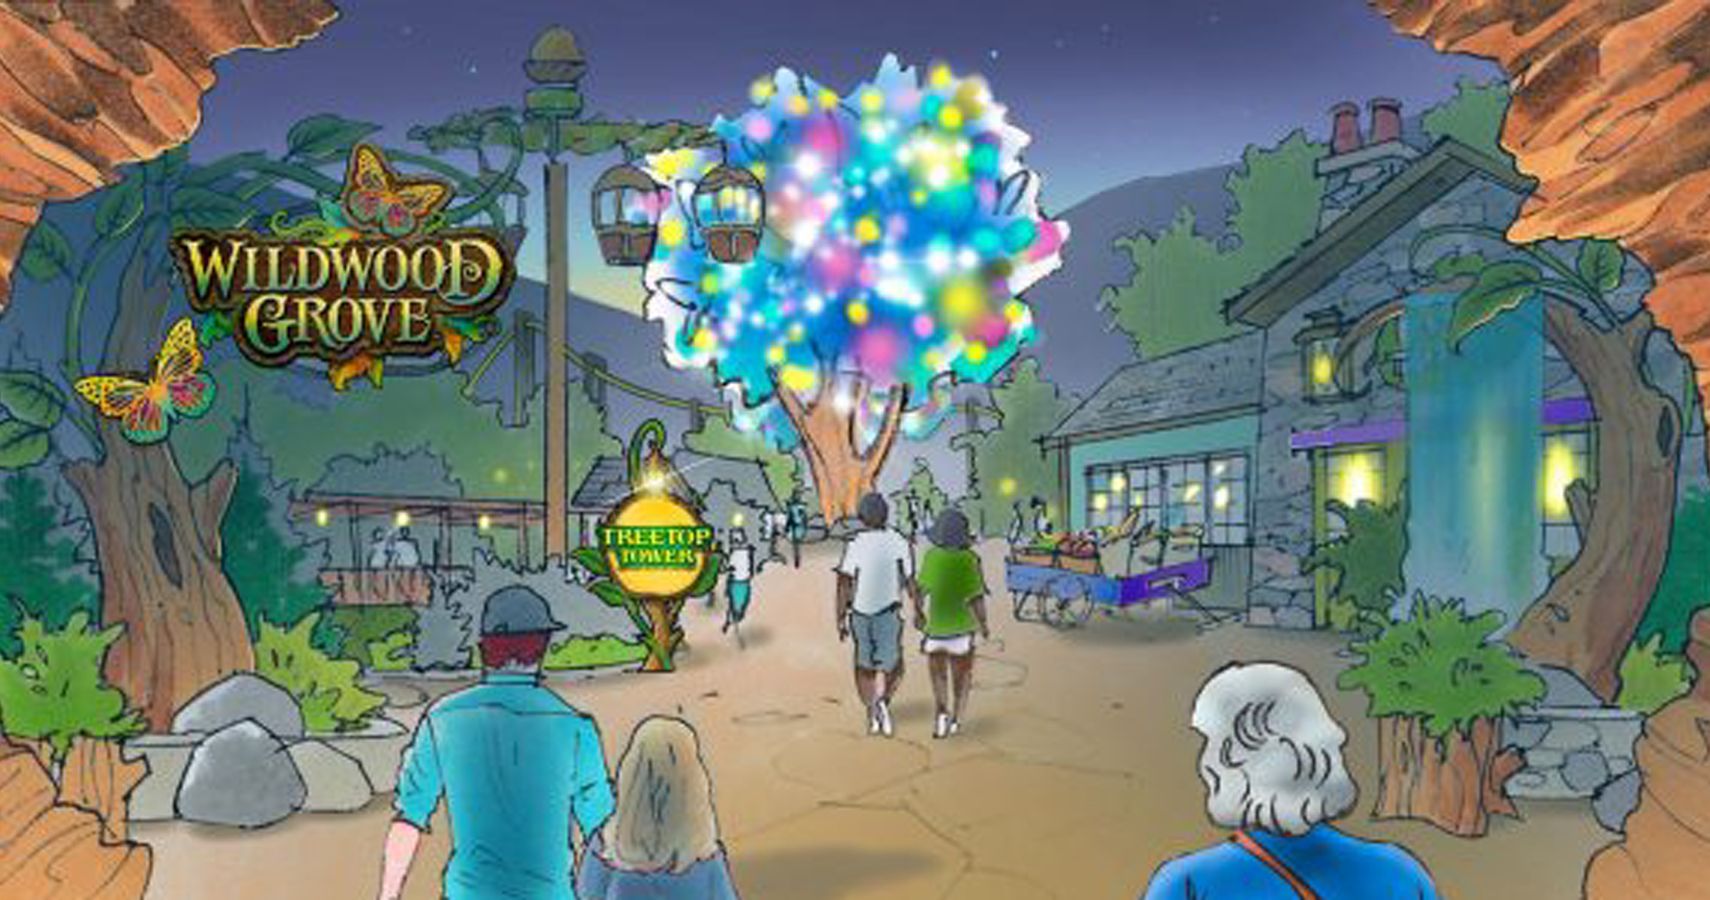 Dollywood Theme Park lancara uma grande nova expansao em 2019